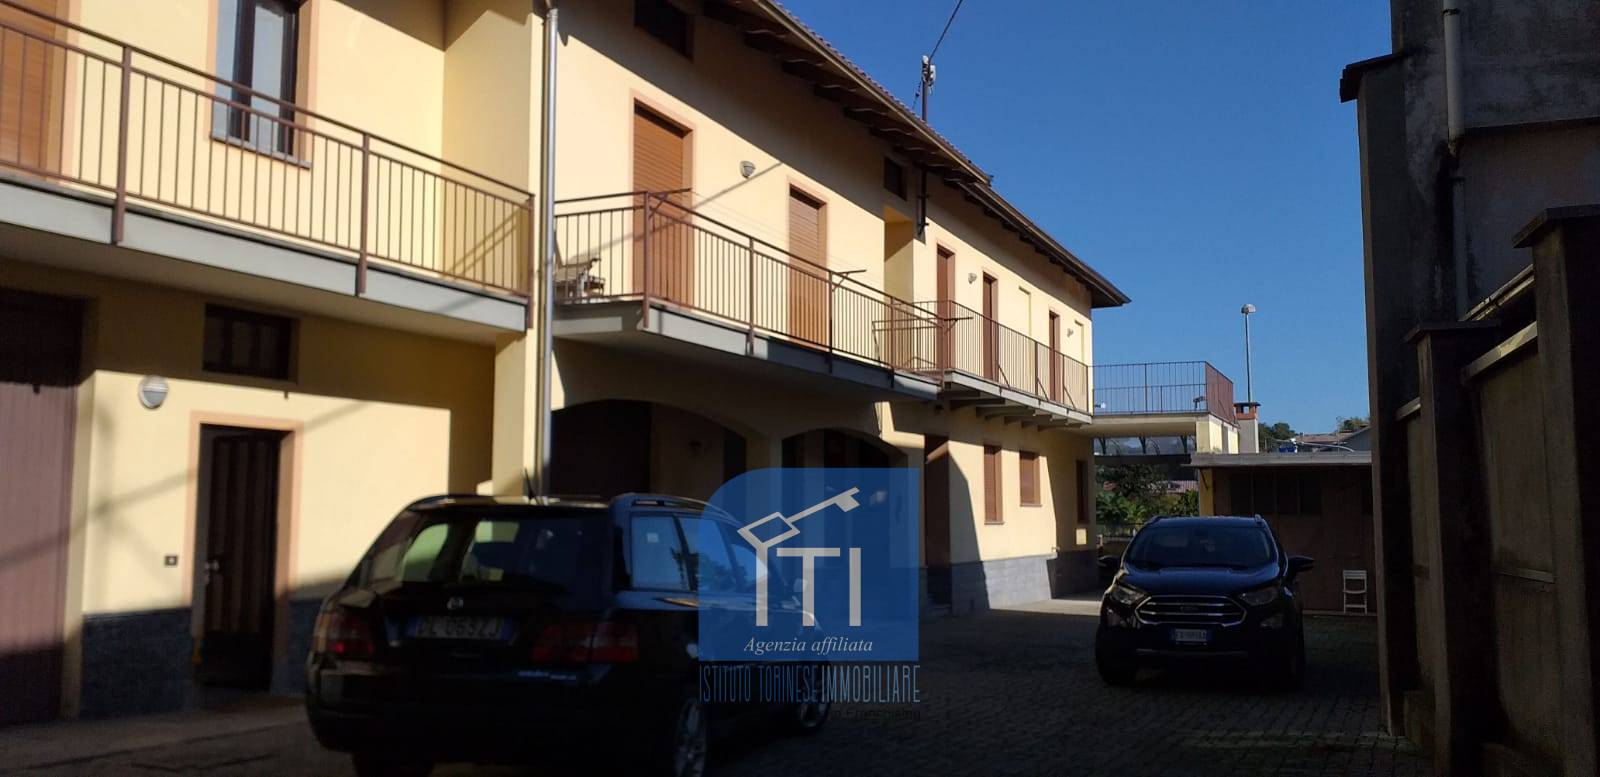 Appartamento in vendita a Occhieppo Inferiore, 5 locali, prezzo € 60.000 | PortaleAgenzieImmobiliari.it